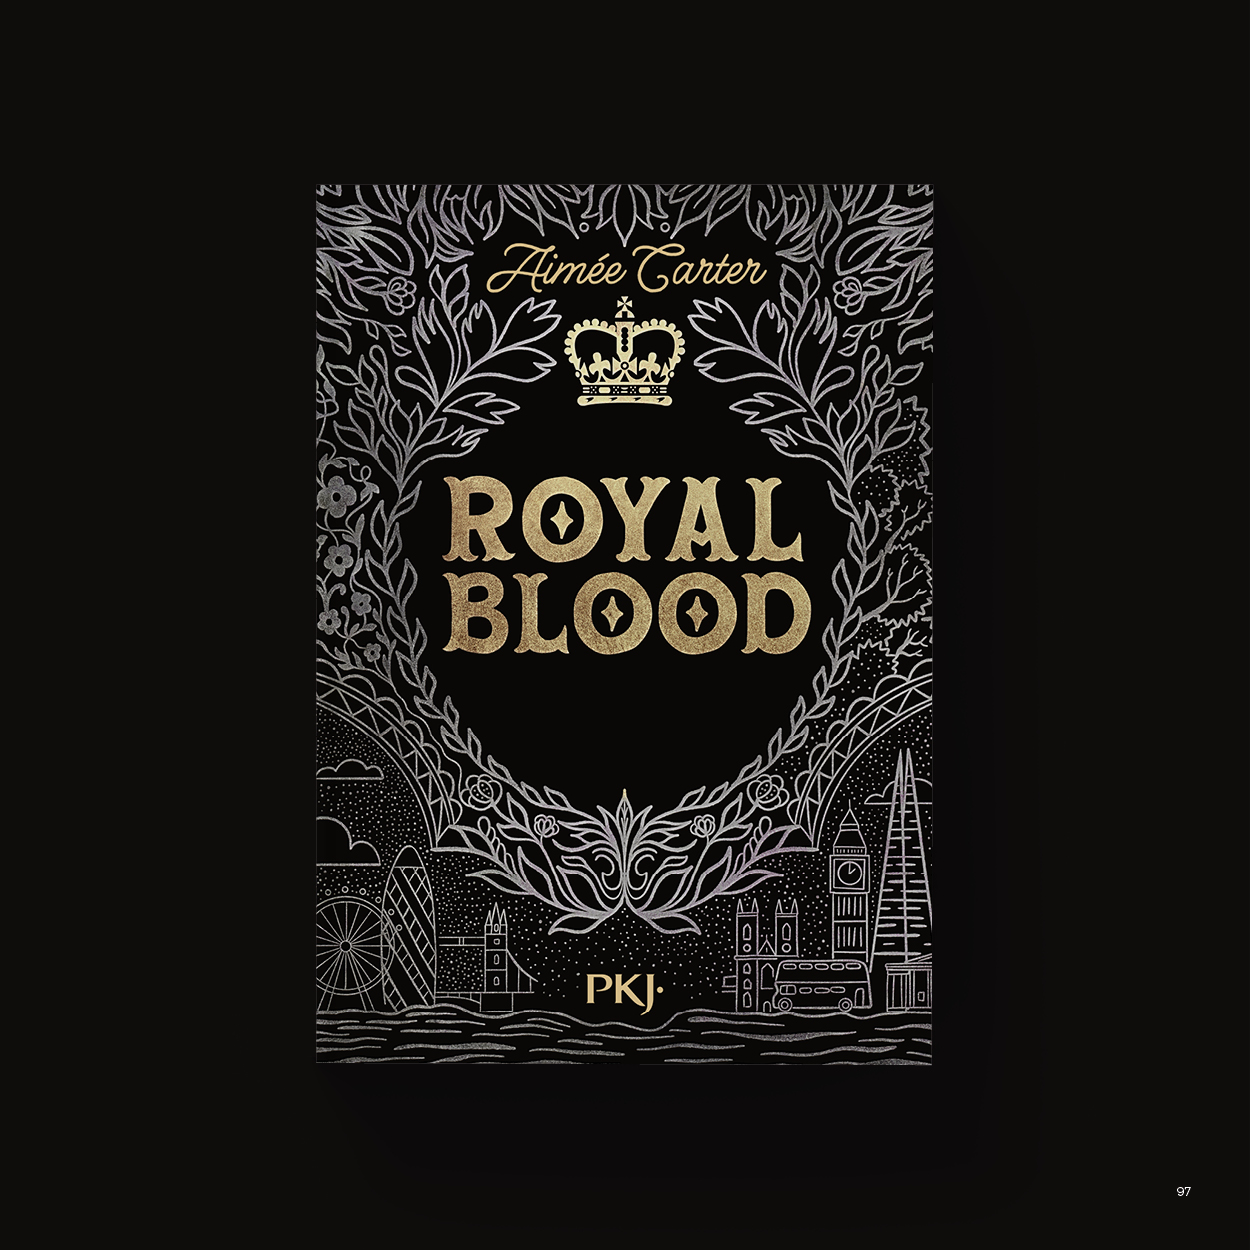 Vue_Royal_blood_97